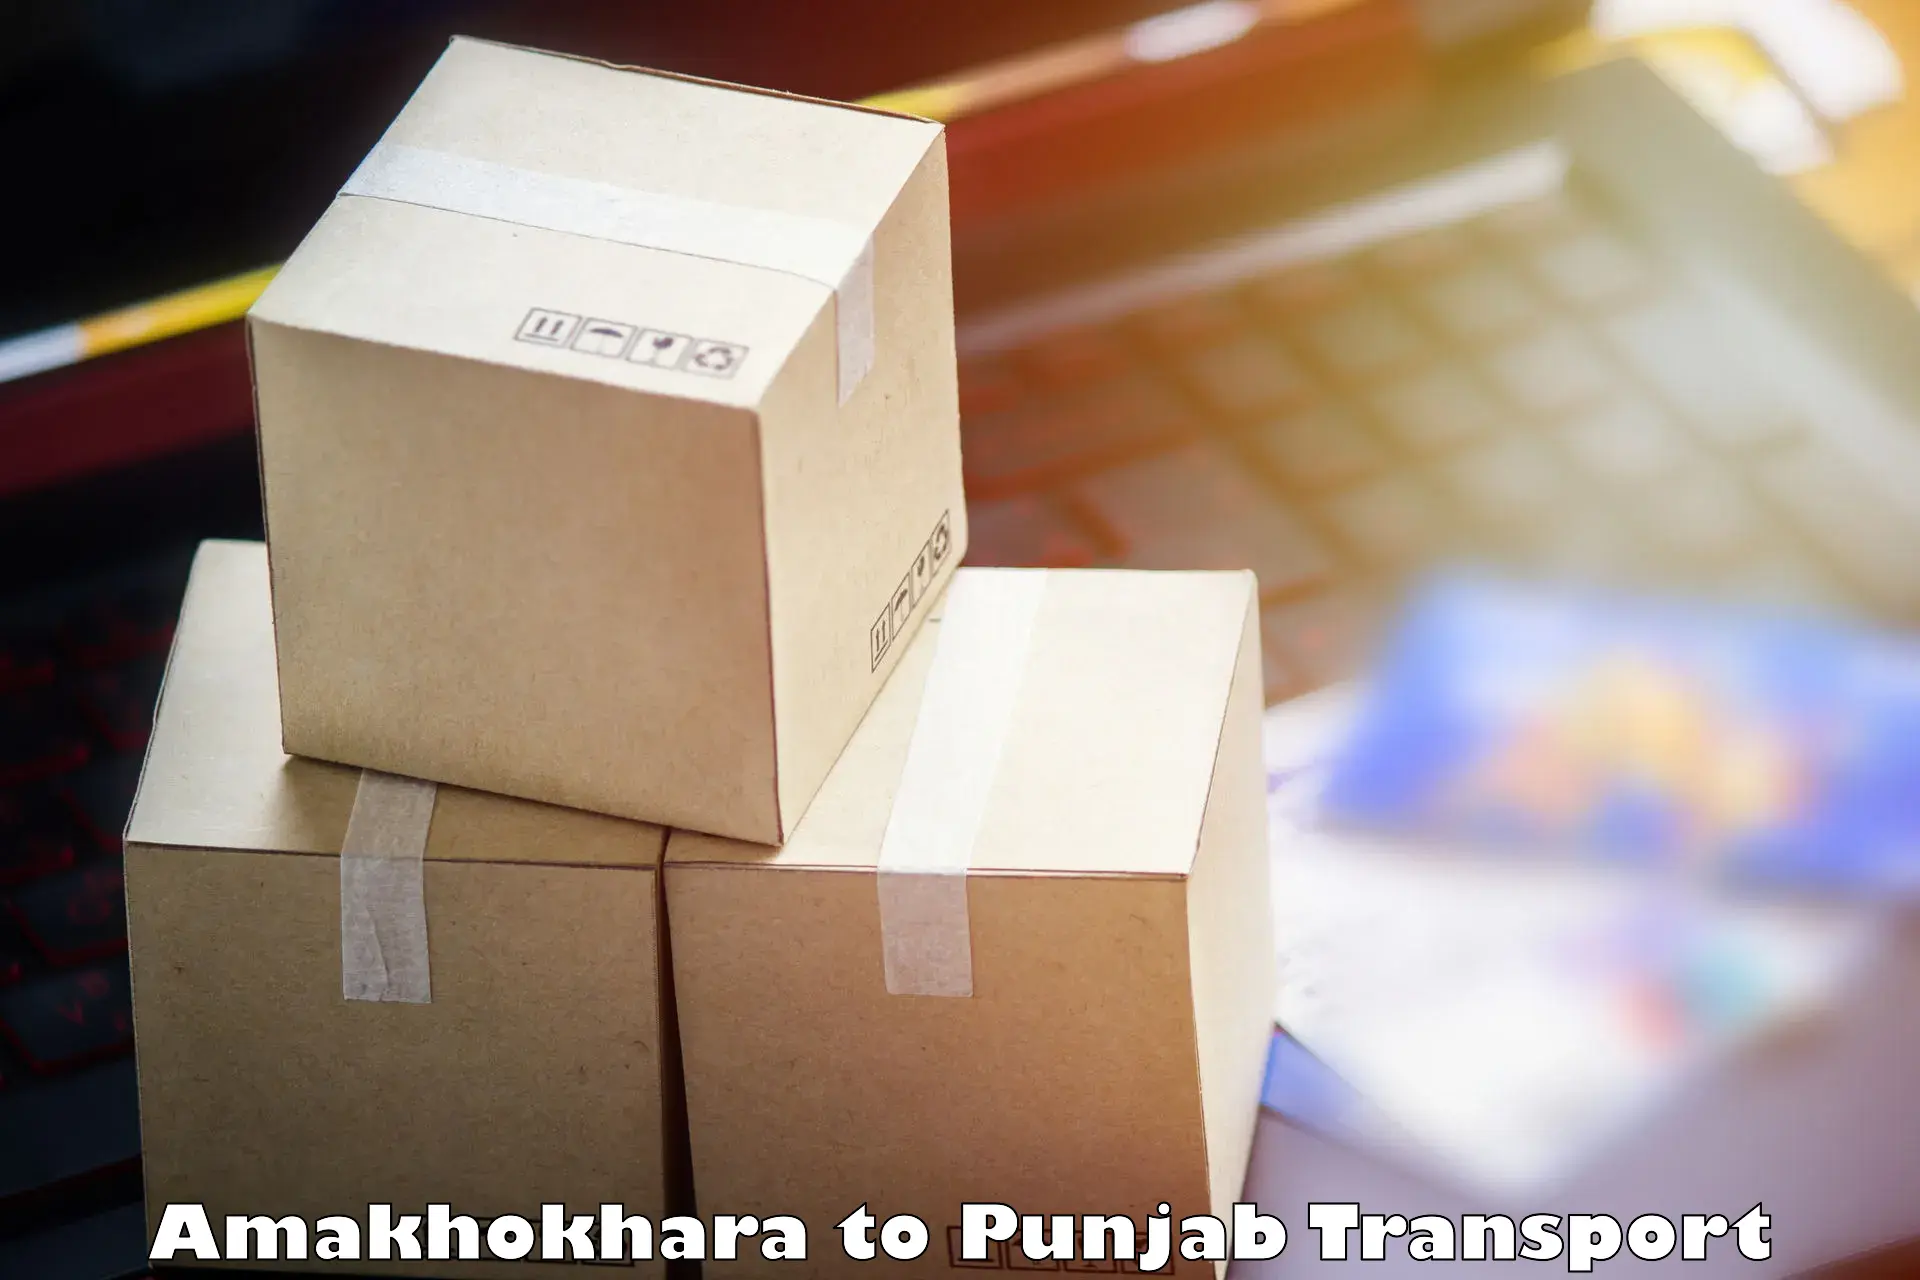 Transport in sharing Amakhokhara to Bathinda